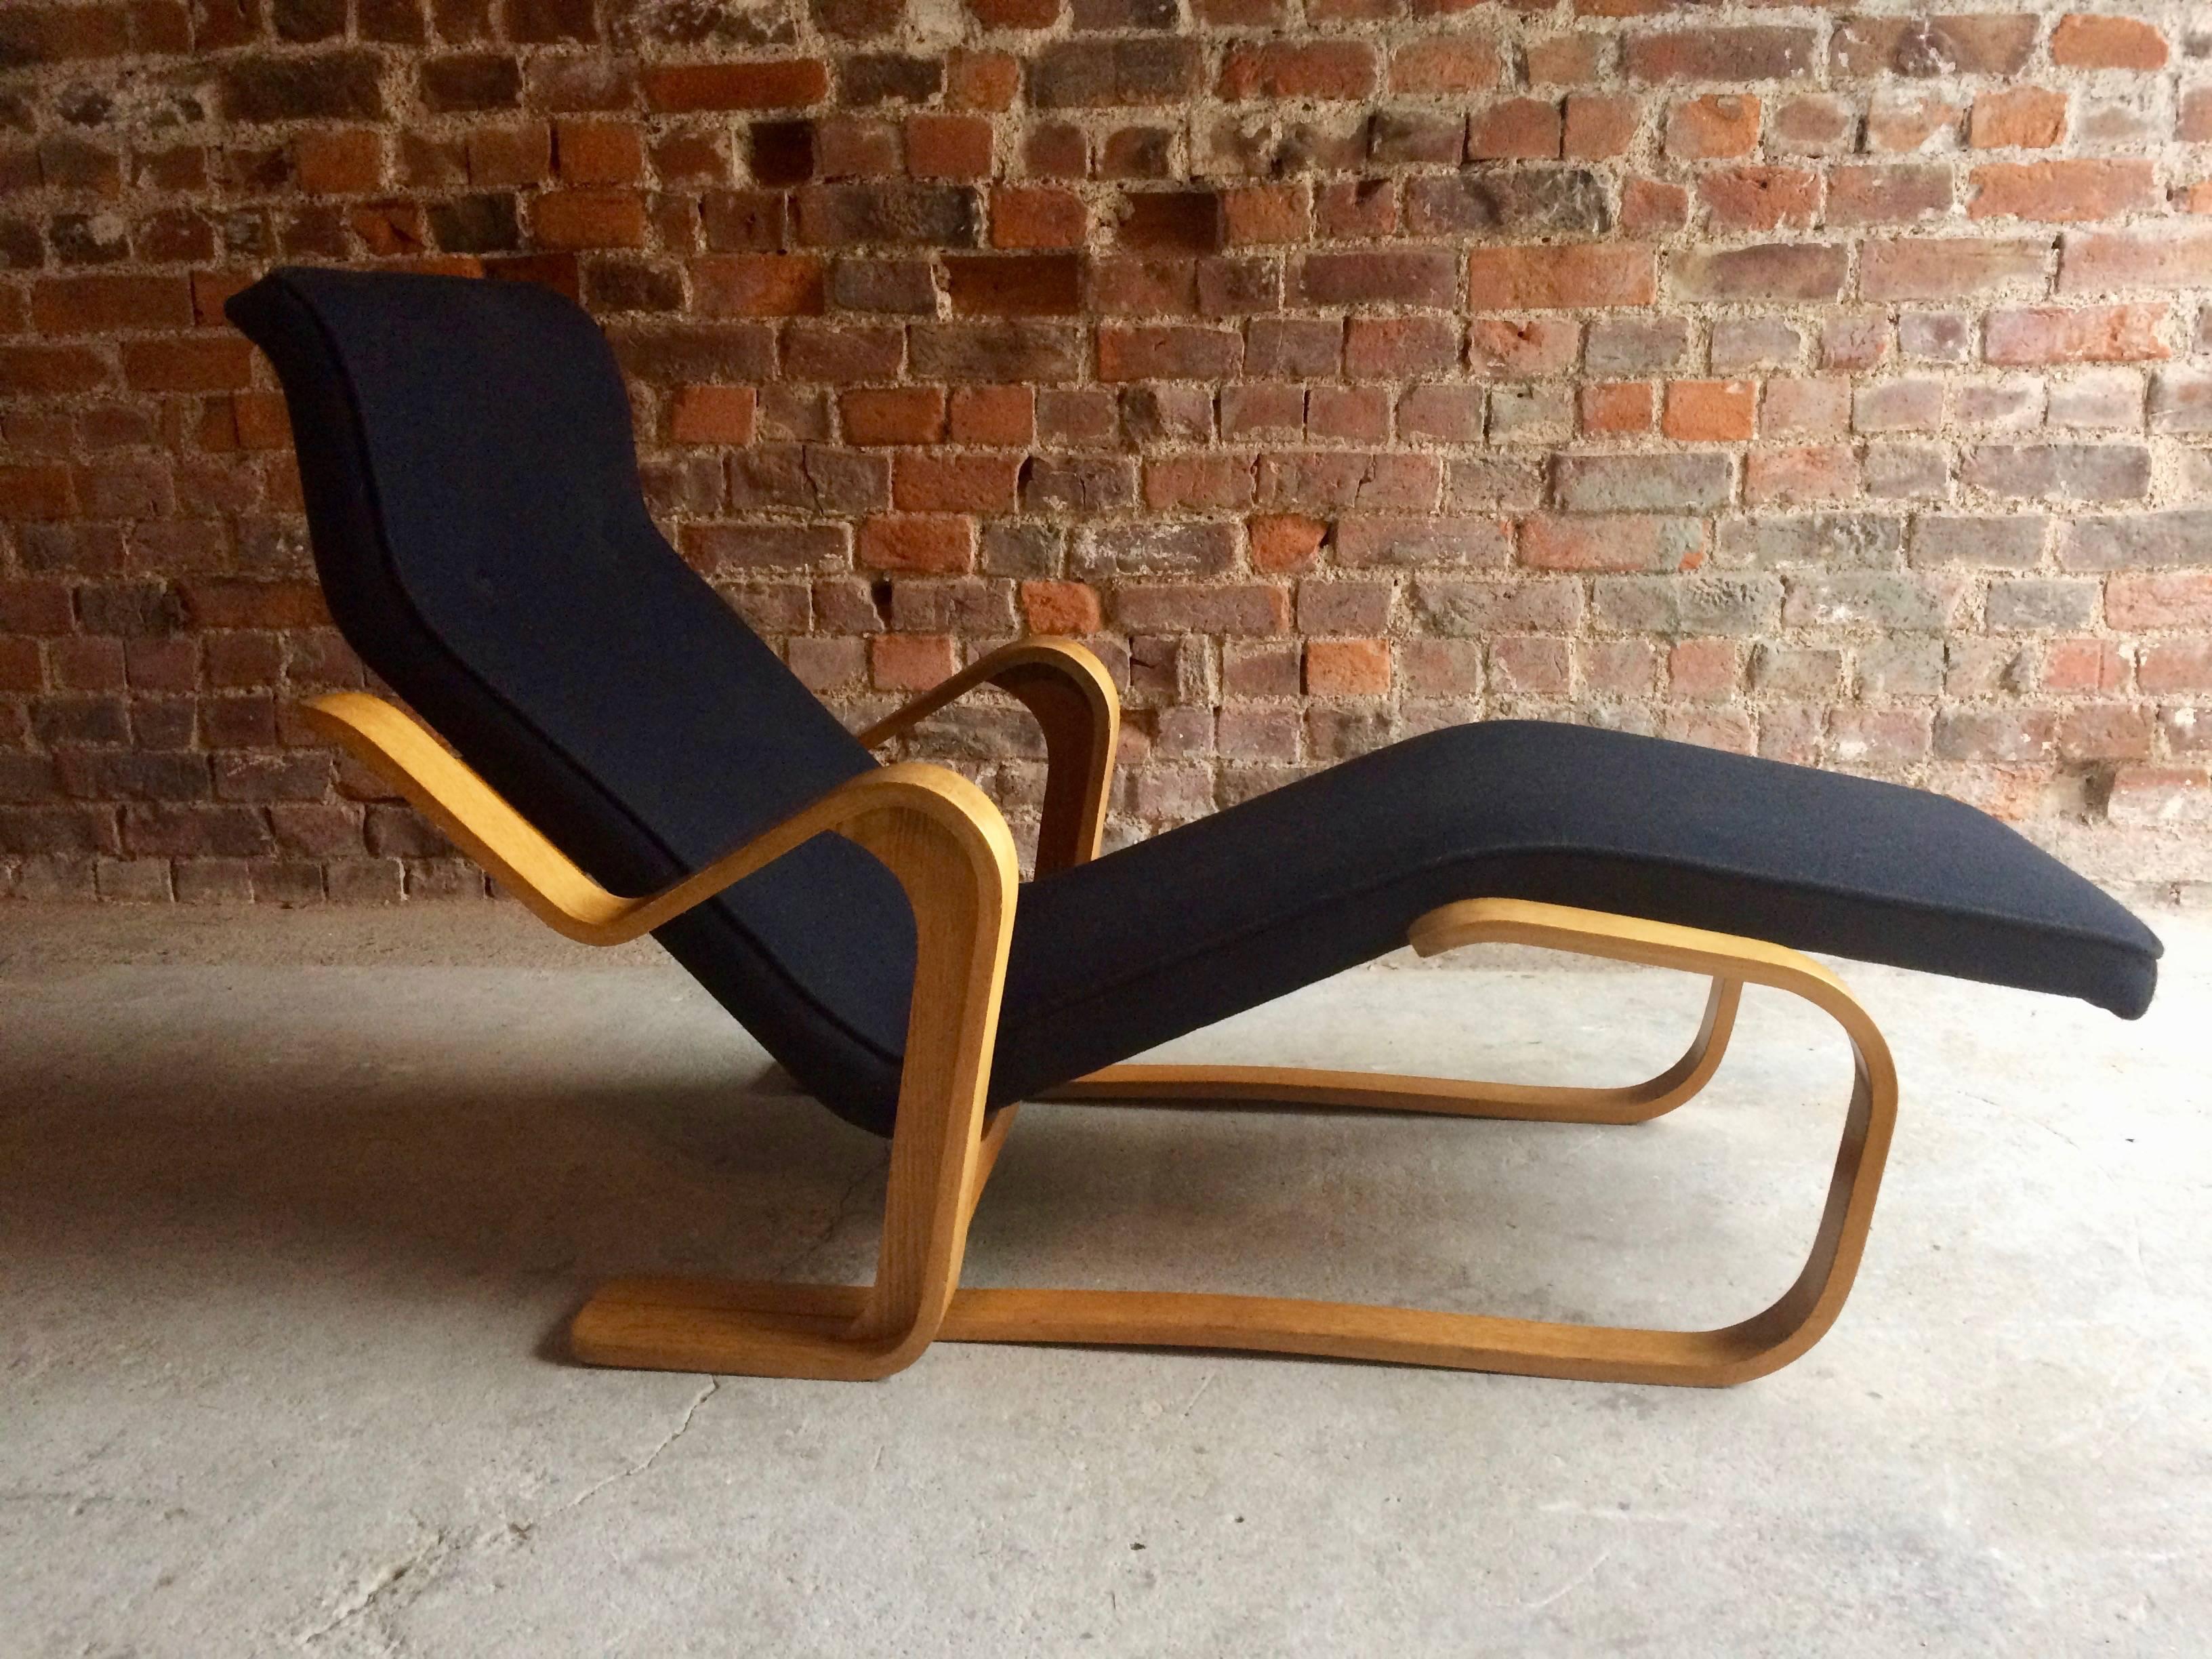 Marcel Breuer Long Chair Chaise Longue Black Midcentury 1970s Bauhaus No. 3 3